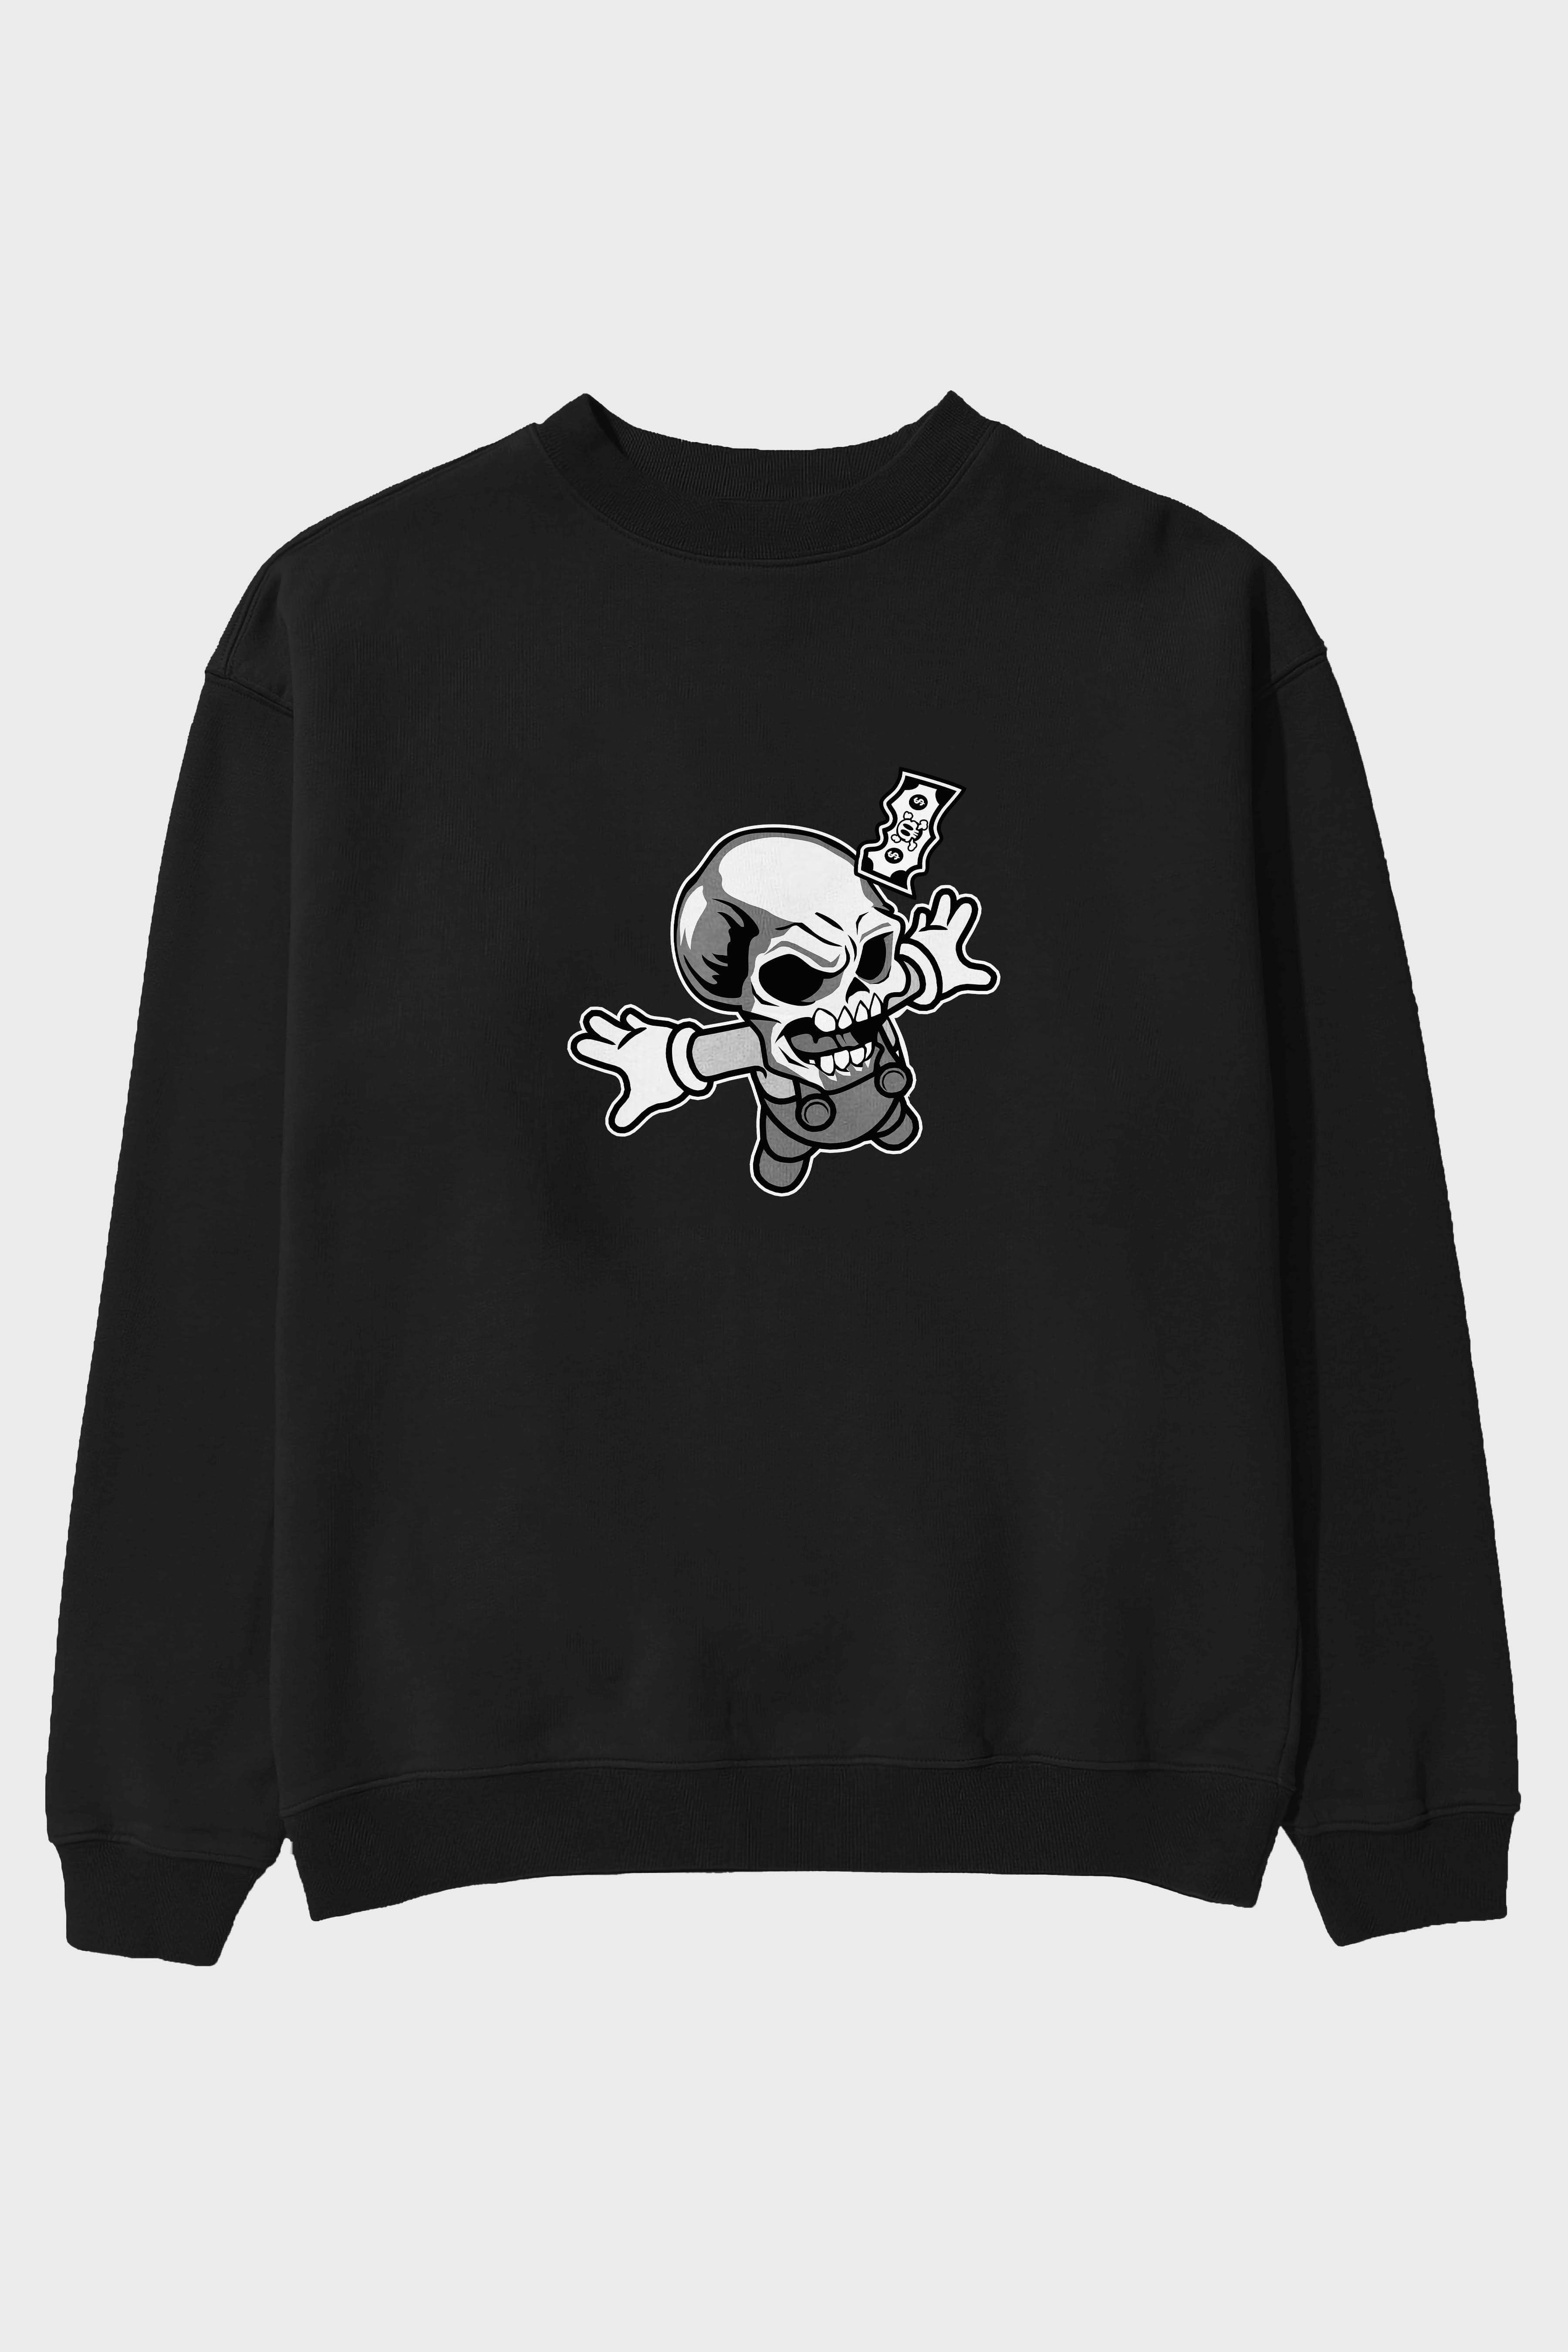 Skull Drowning Ön Baskılı Oversize Sweatshirt Erkek Kadın Unisex